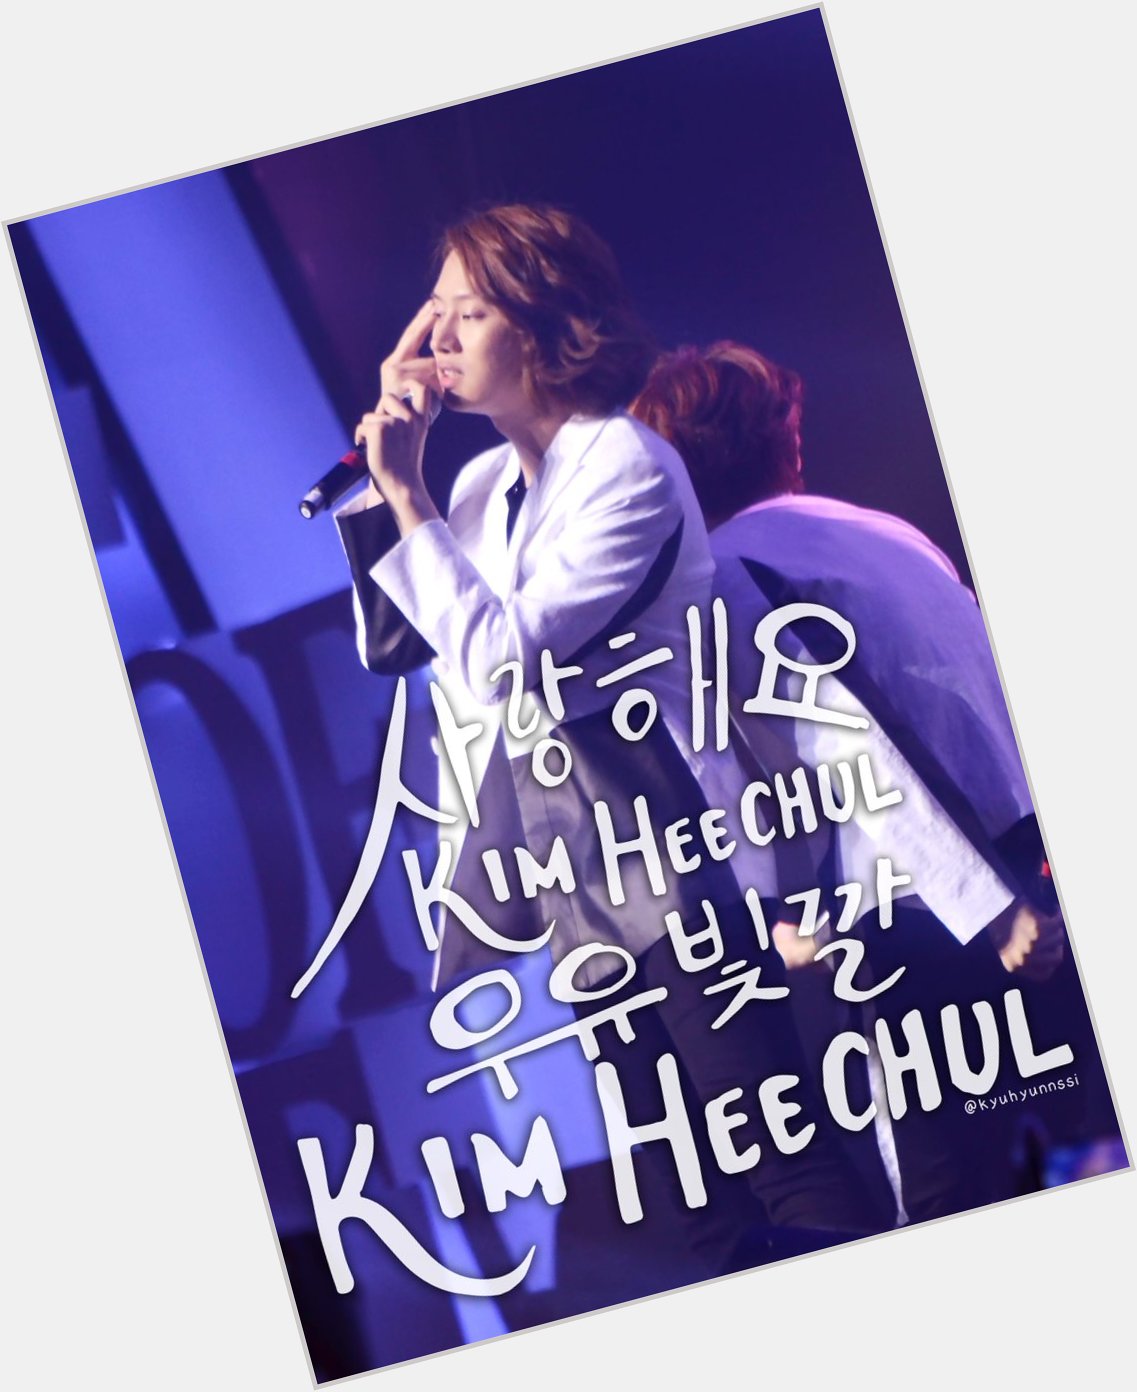     Kim Heechul!    Kim Heechul!
KIM!
HEE!
CHUL!
Happy Birthday, you beautiful creature you~   